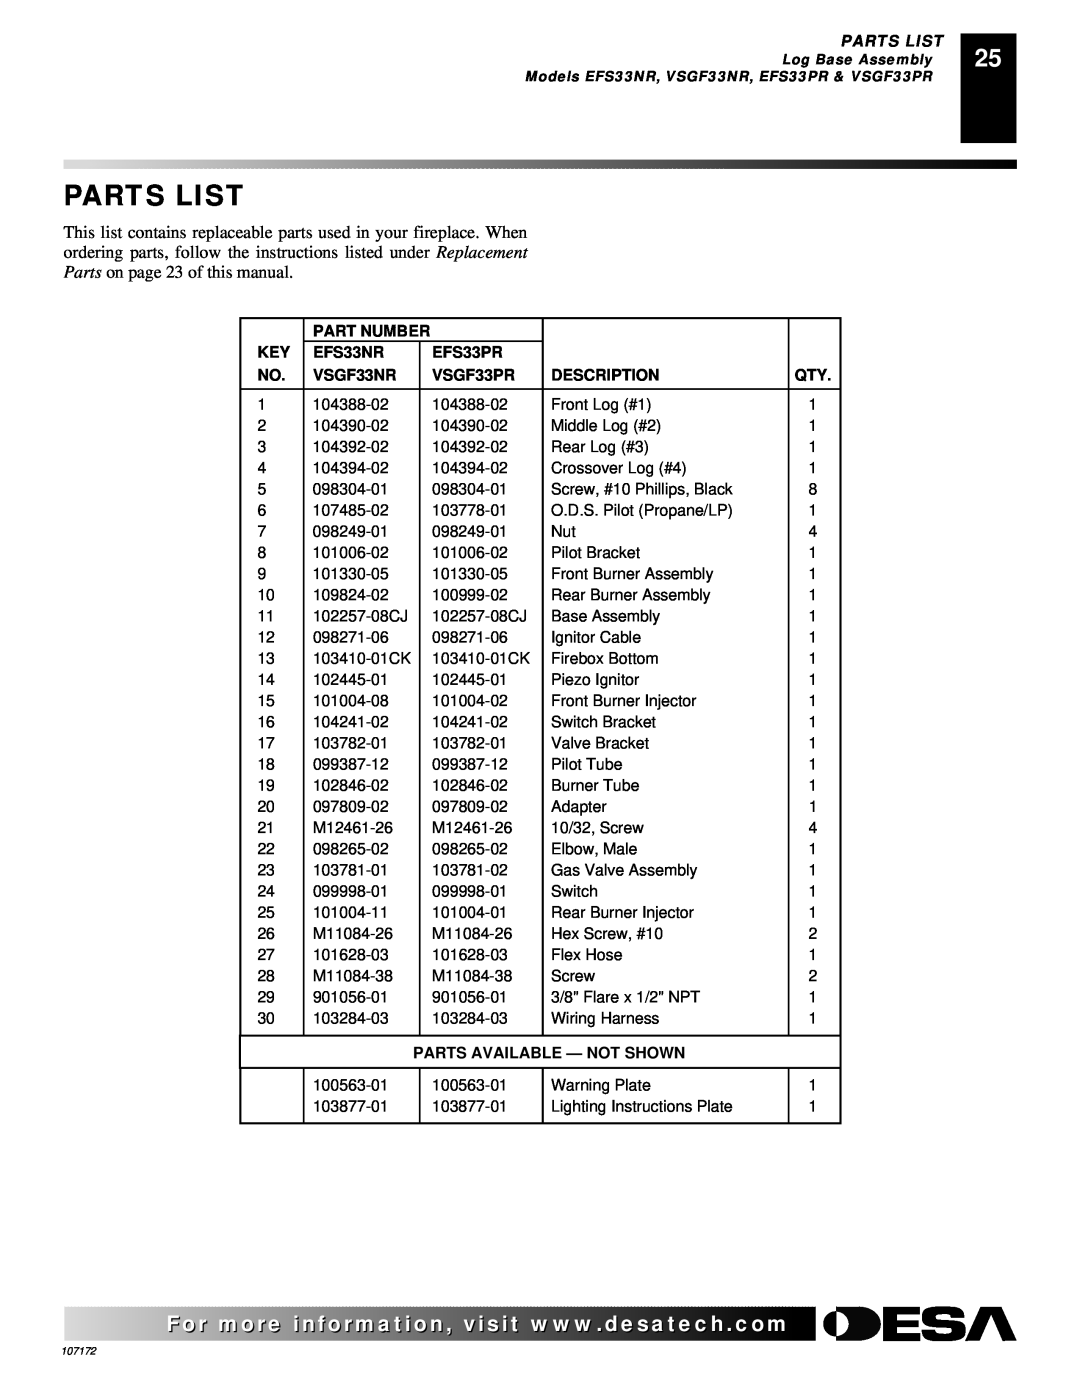 Desa VSGF33PR Parts List, Part Number, EFS33NR, EFS33PR, VSGF33NR, Description, Parts Available - Not Shown 